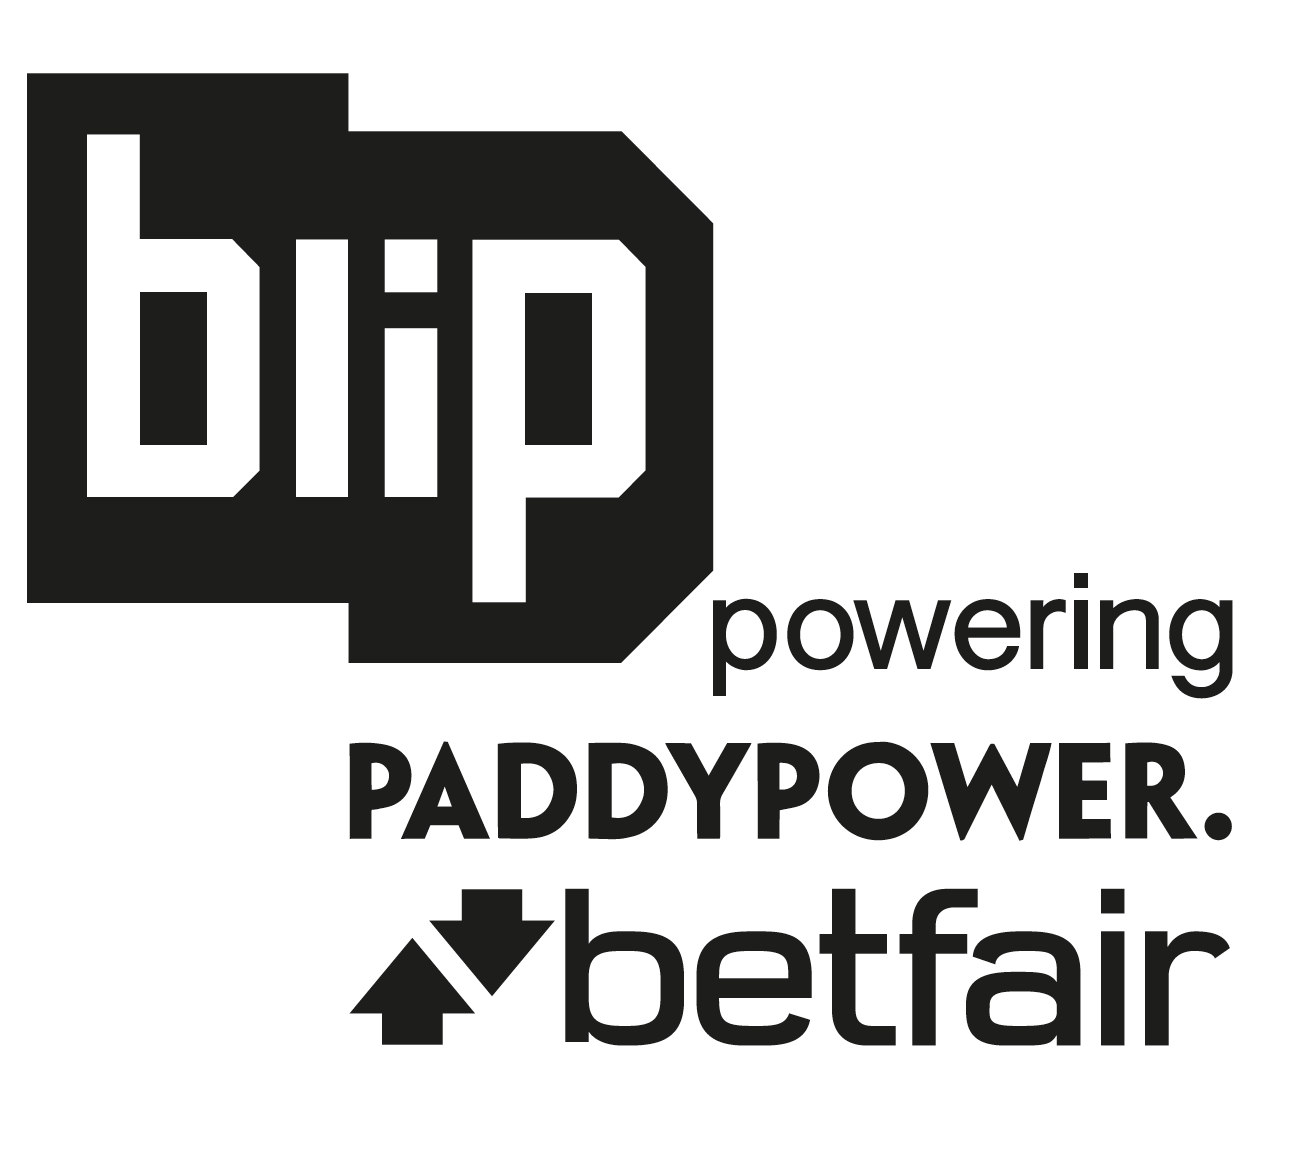 blip logo